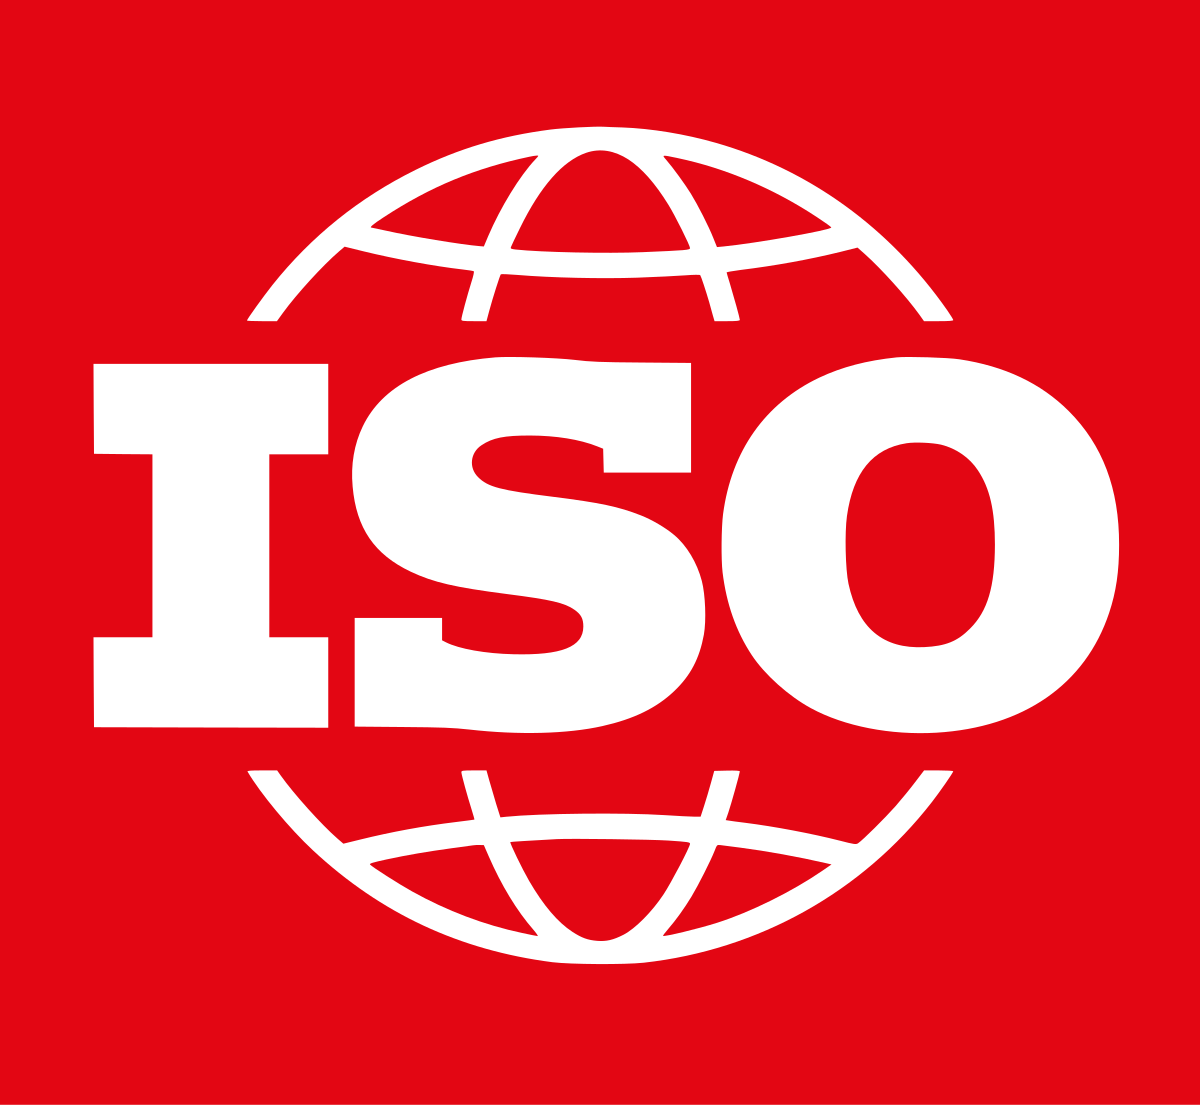 Co to jest ISO 14001 i dlaczego jest takie ważne? 